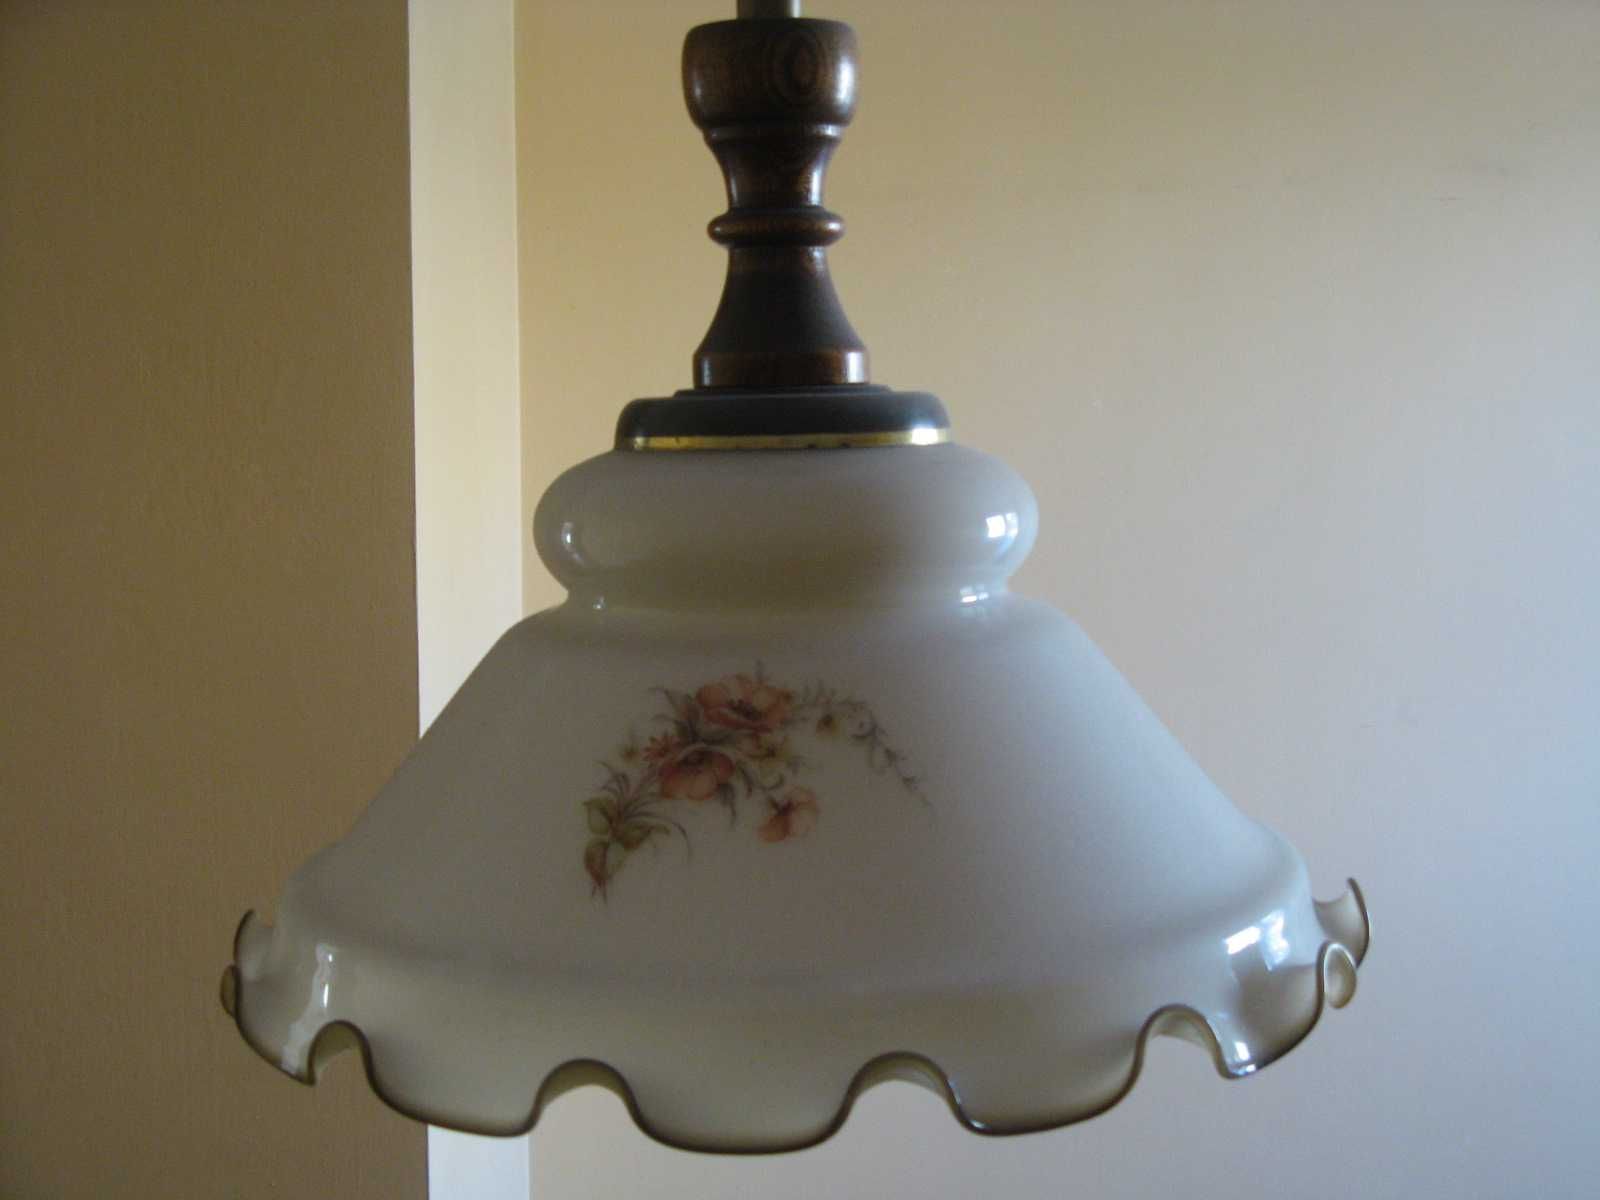 Lampa wisząca pokojowa z kloszem szklanym malowananym.